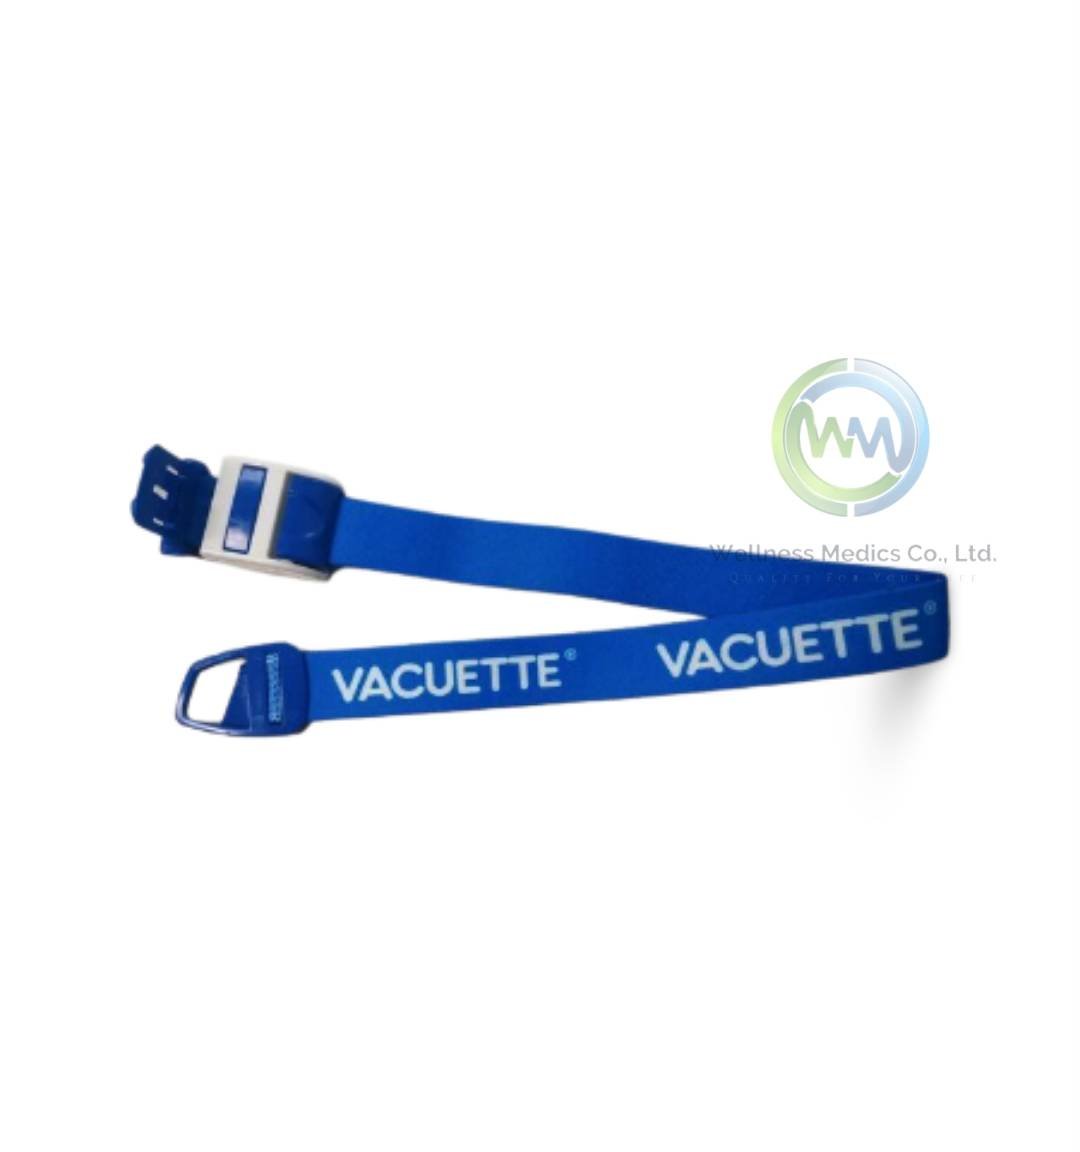 สายรัดแขน Tourniquet สีน้ำเงิน - Vacuette